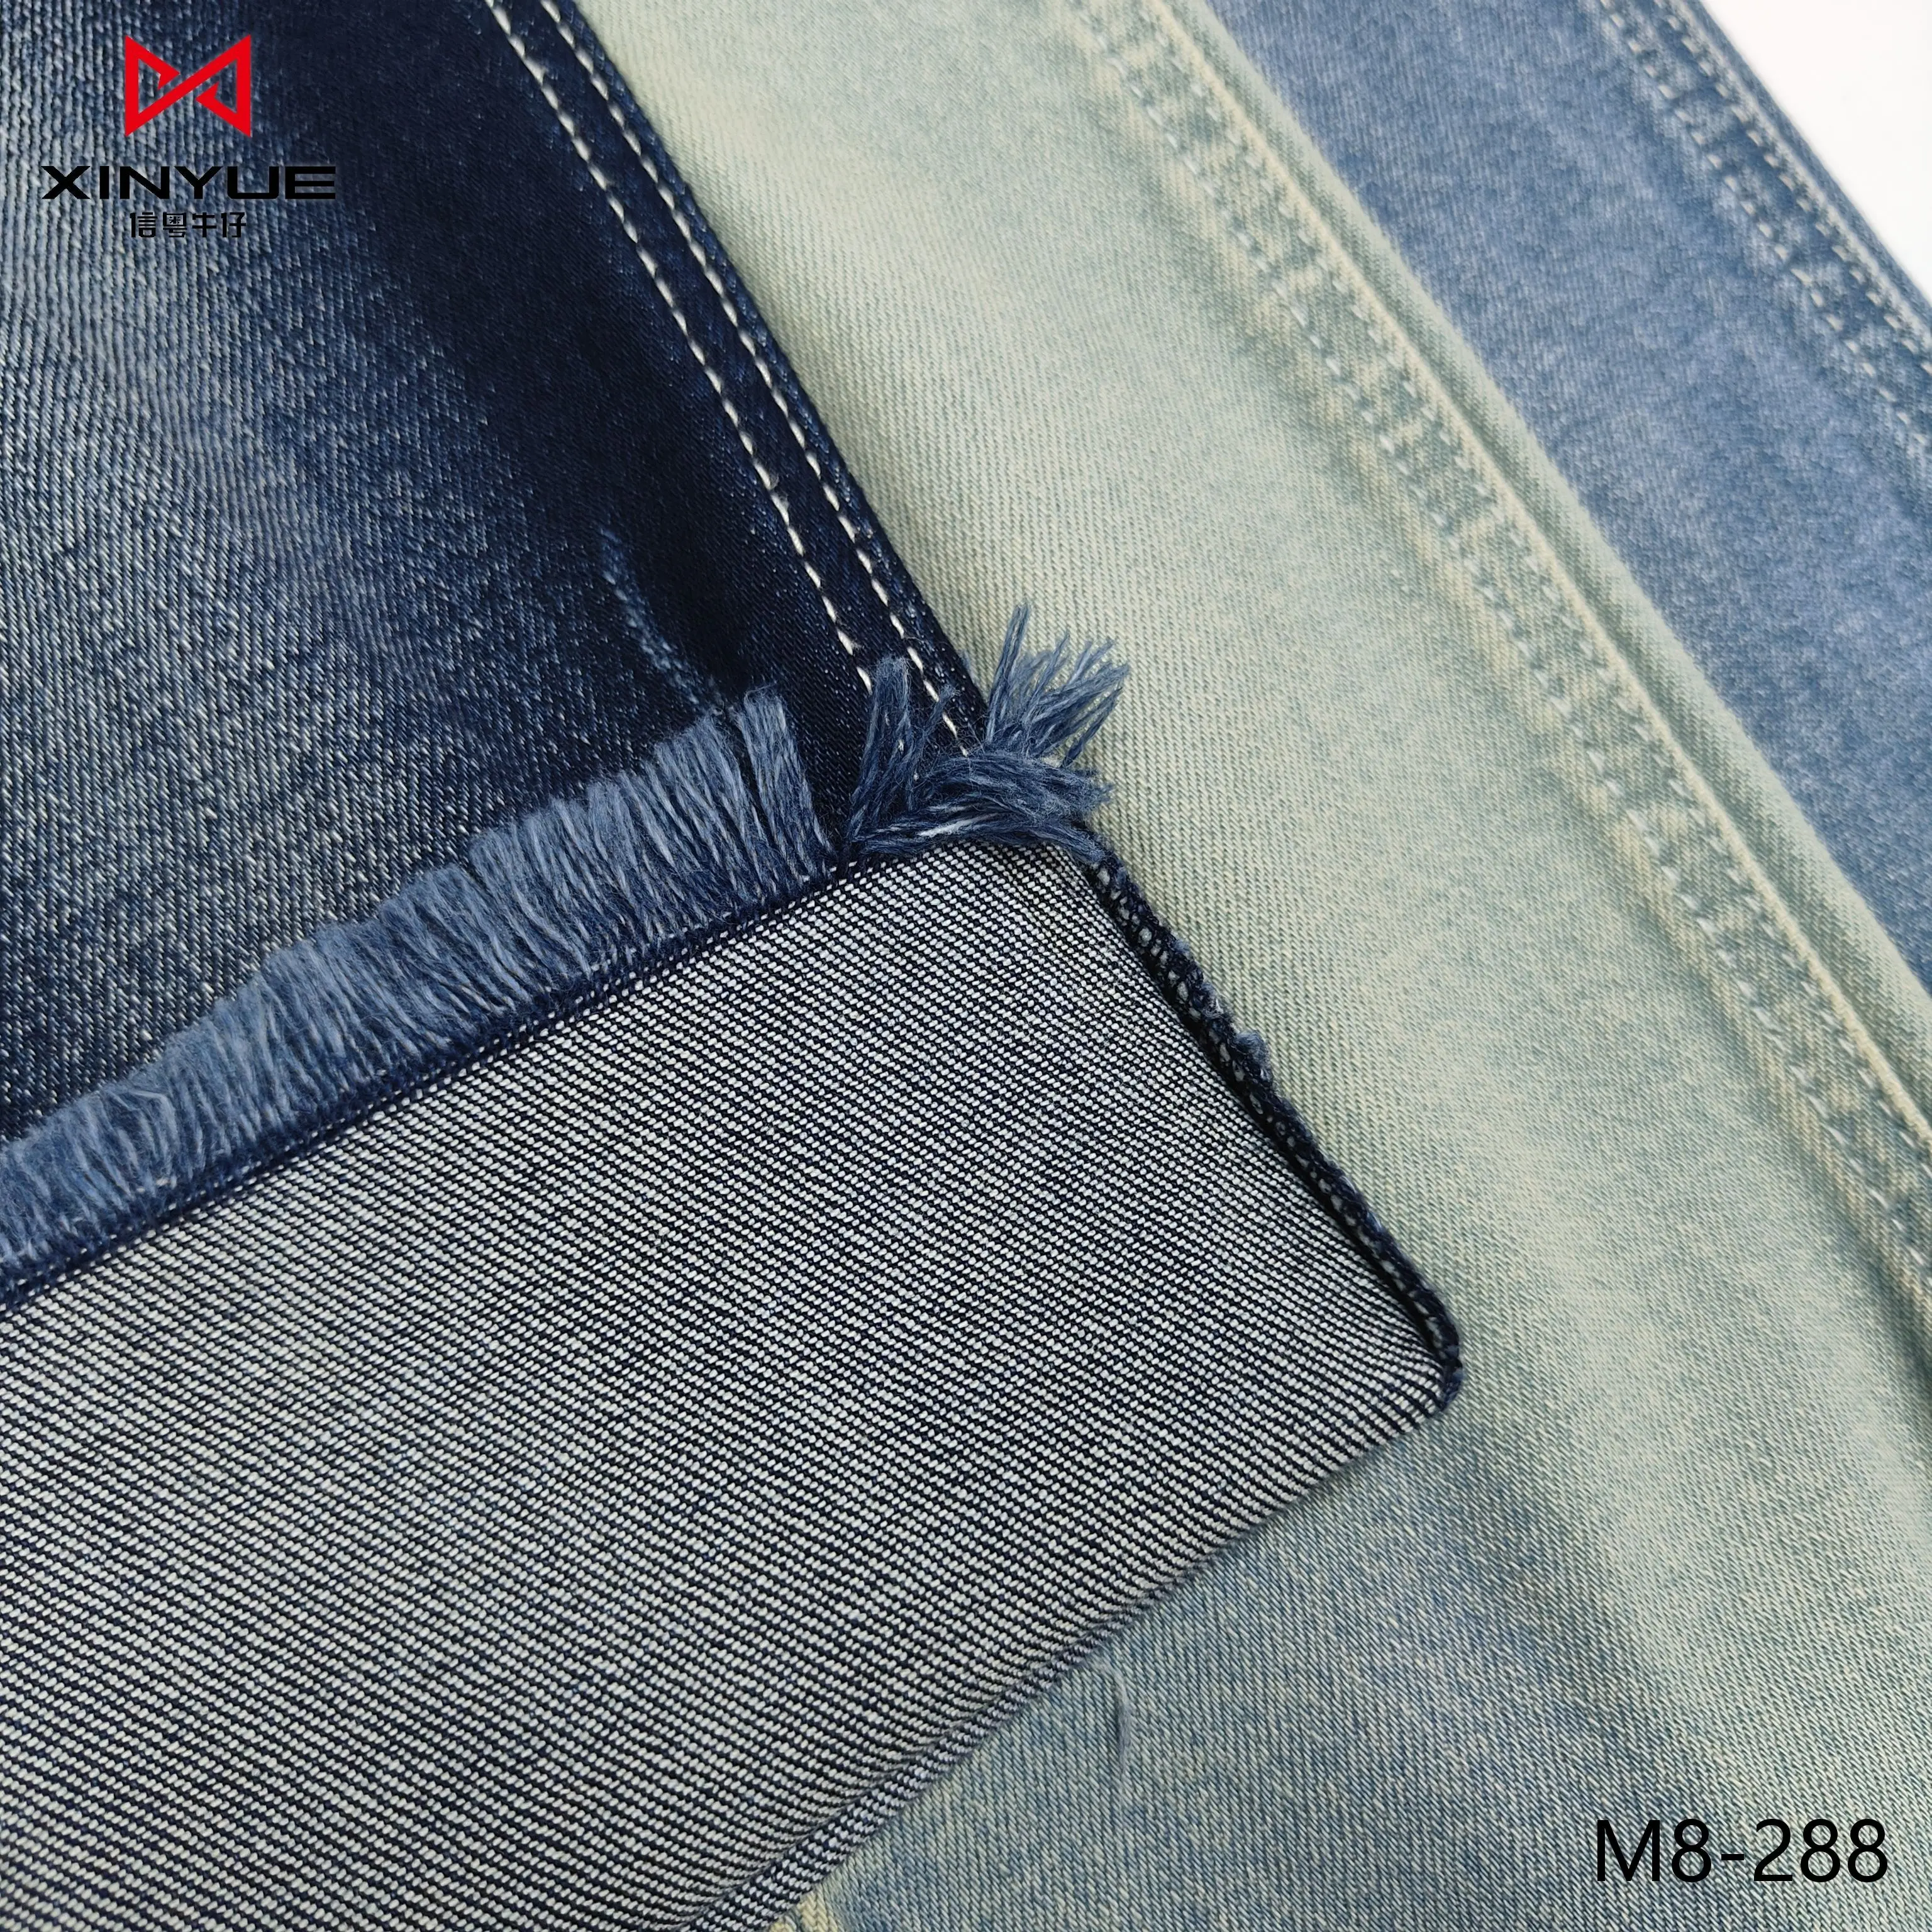 95% katun 4% poliester 1% spandeks strech kain denim dicuci gaya french terry rajutan jeans kain Cina pabrik grosir